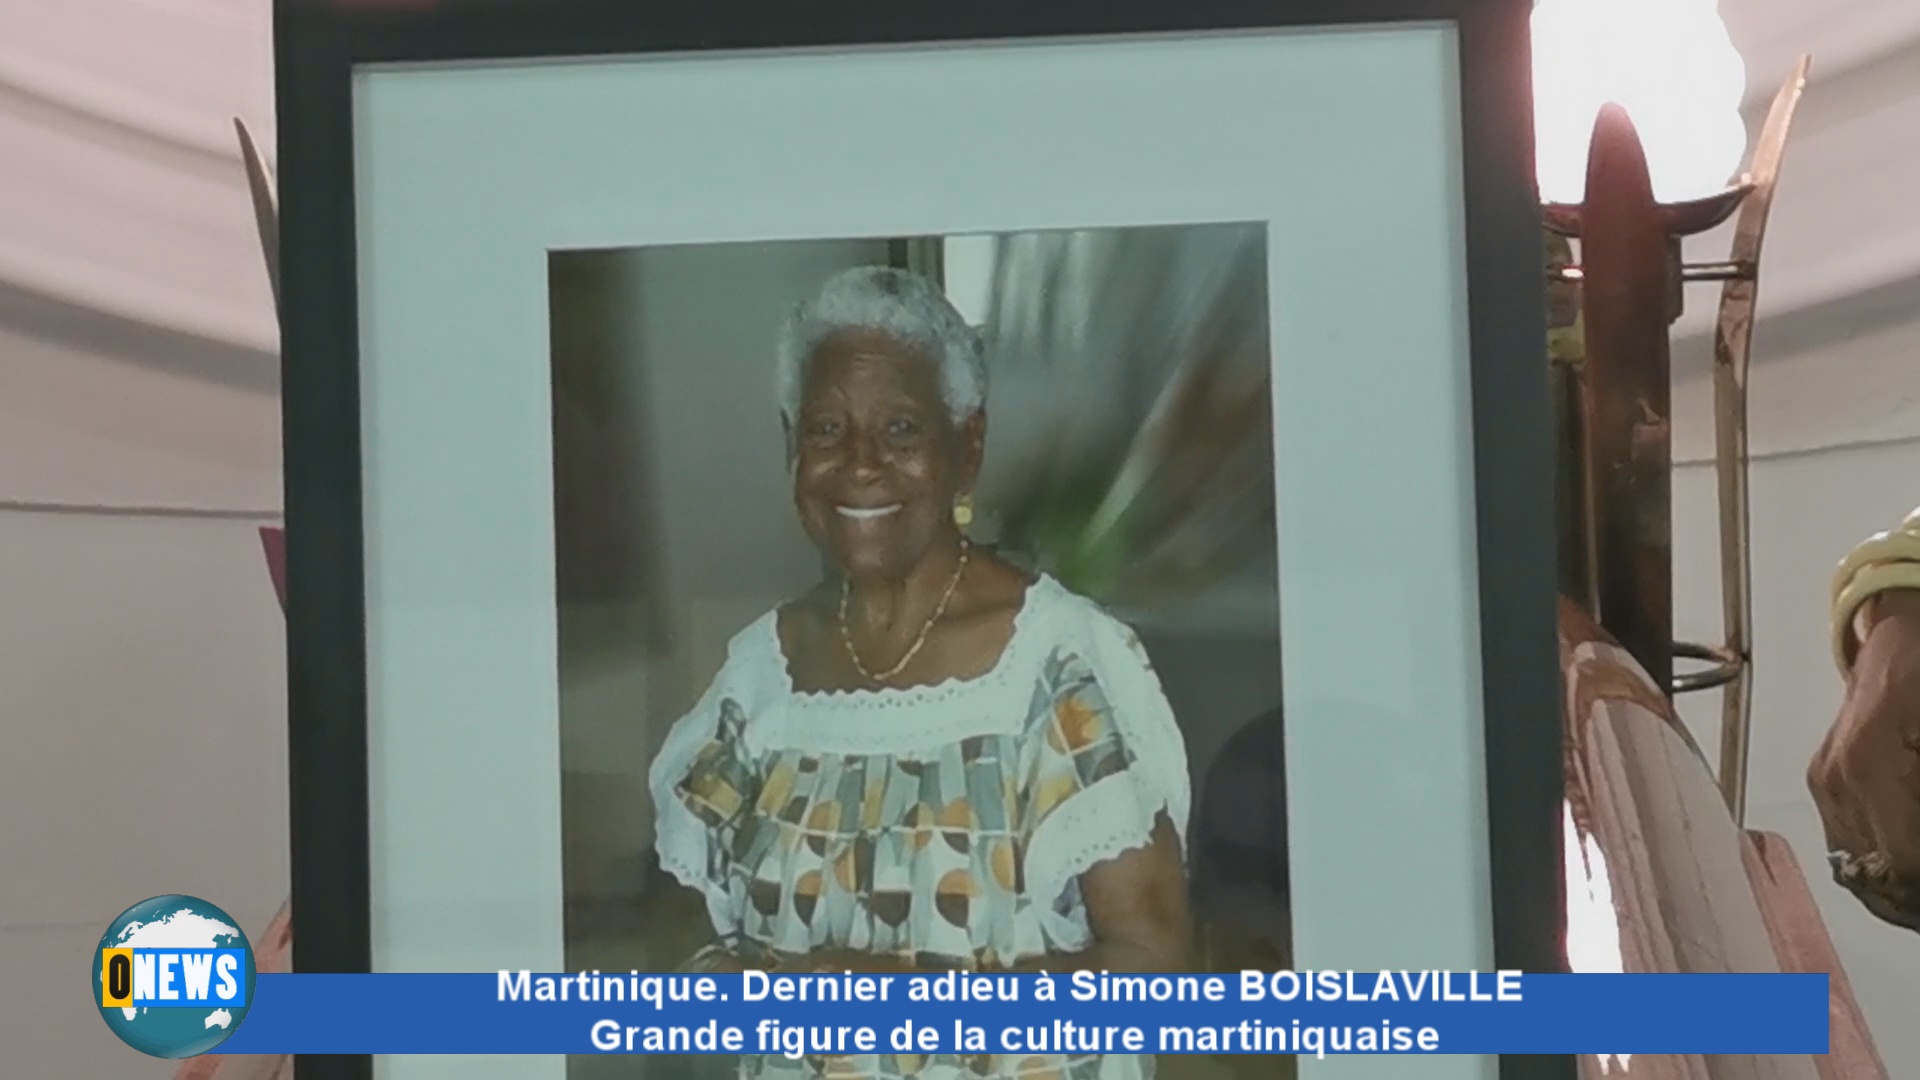 [Vidéo] Martinique. Dernier adieu à Simone BOISLAVILLE du grand ballet martiniquais